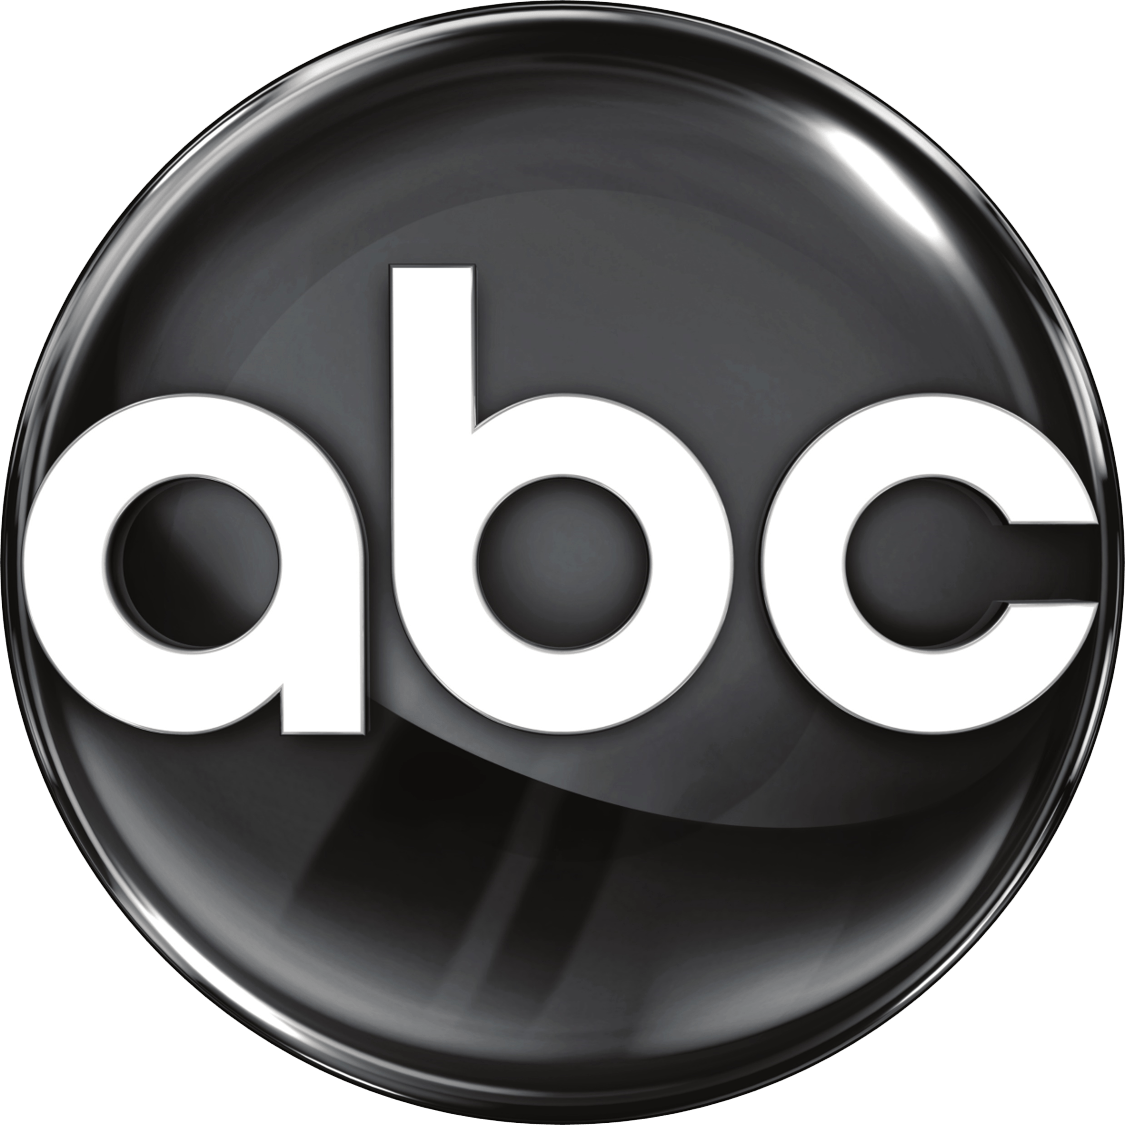 United Circle Logo - ABC (United States)